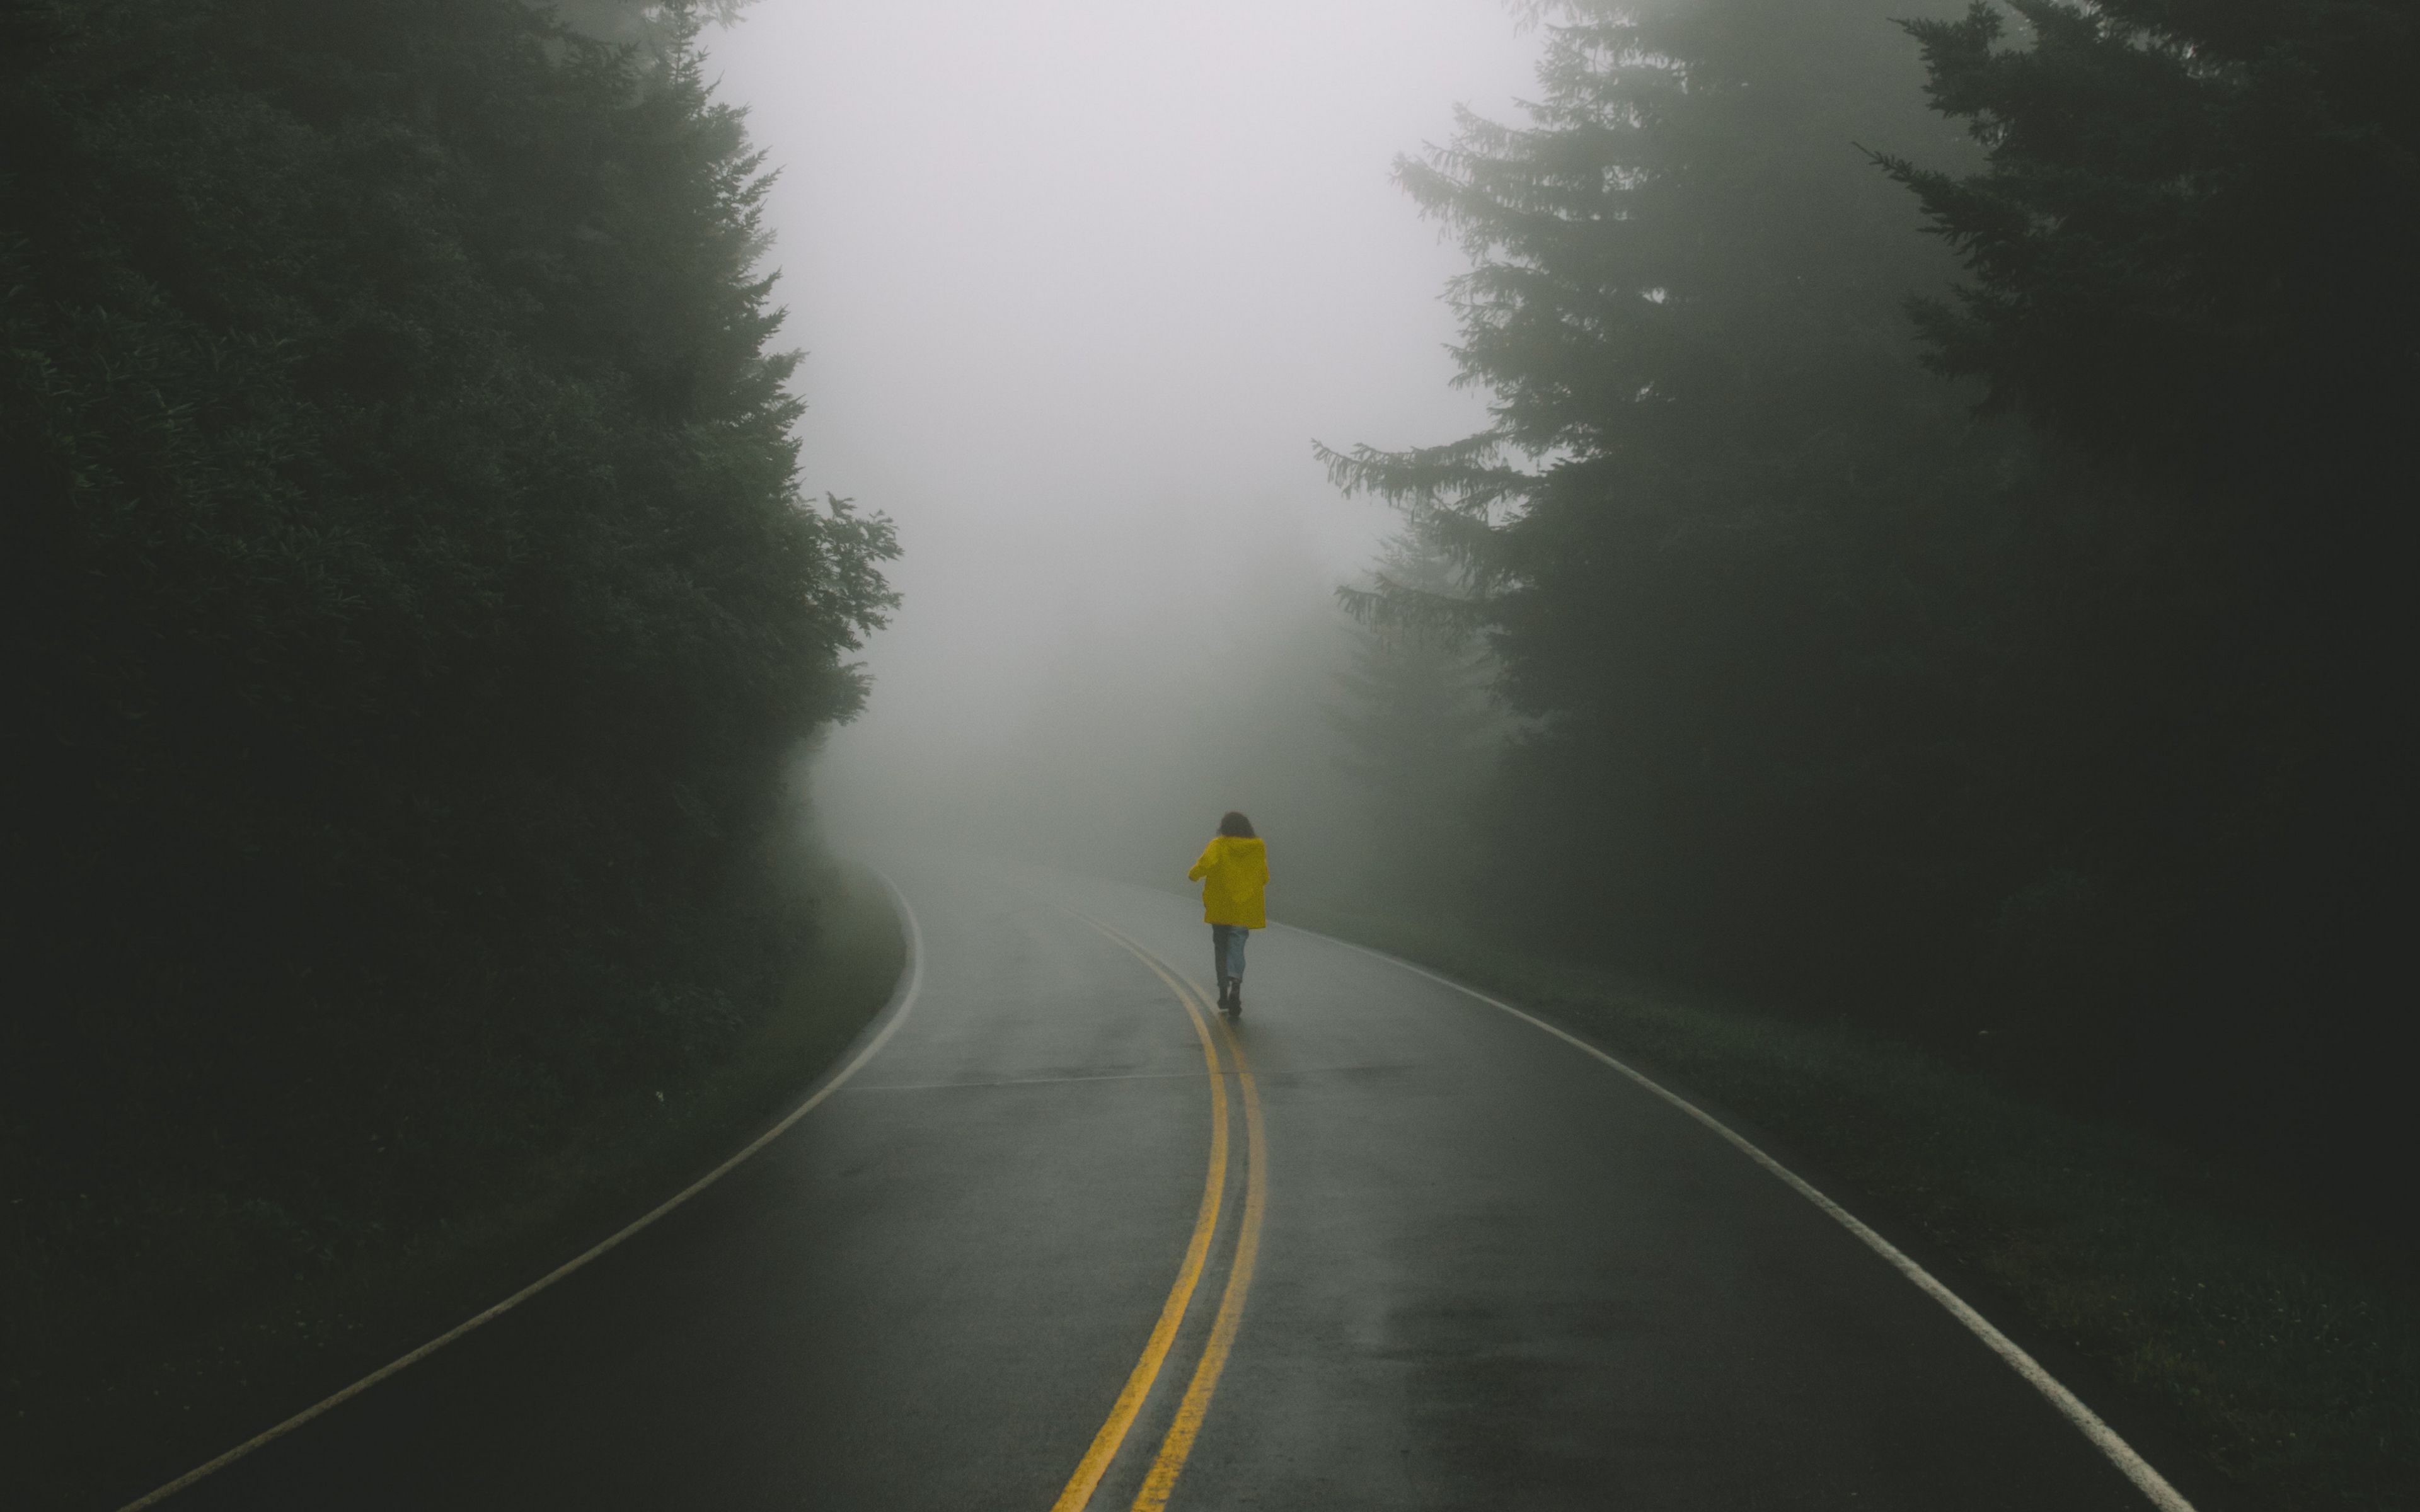 По дороге пошел две дороги нашел. Человек на дороге. Идет по дороге. Человек идет по дороге. Человек на дороге в тумане.